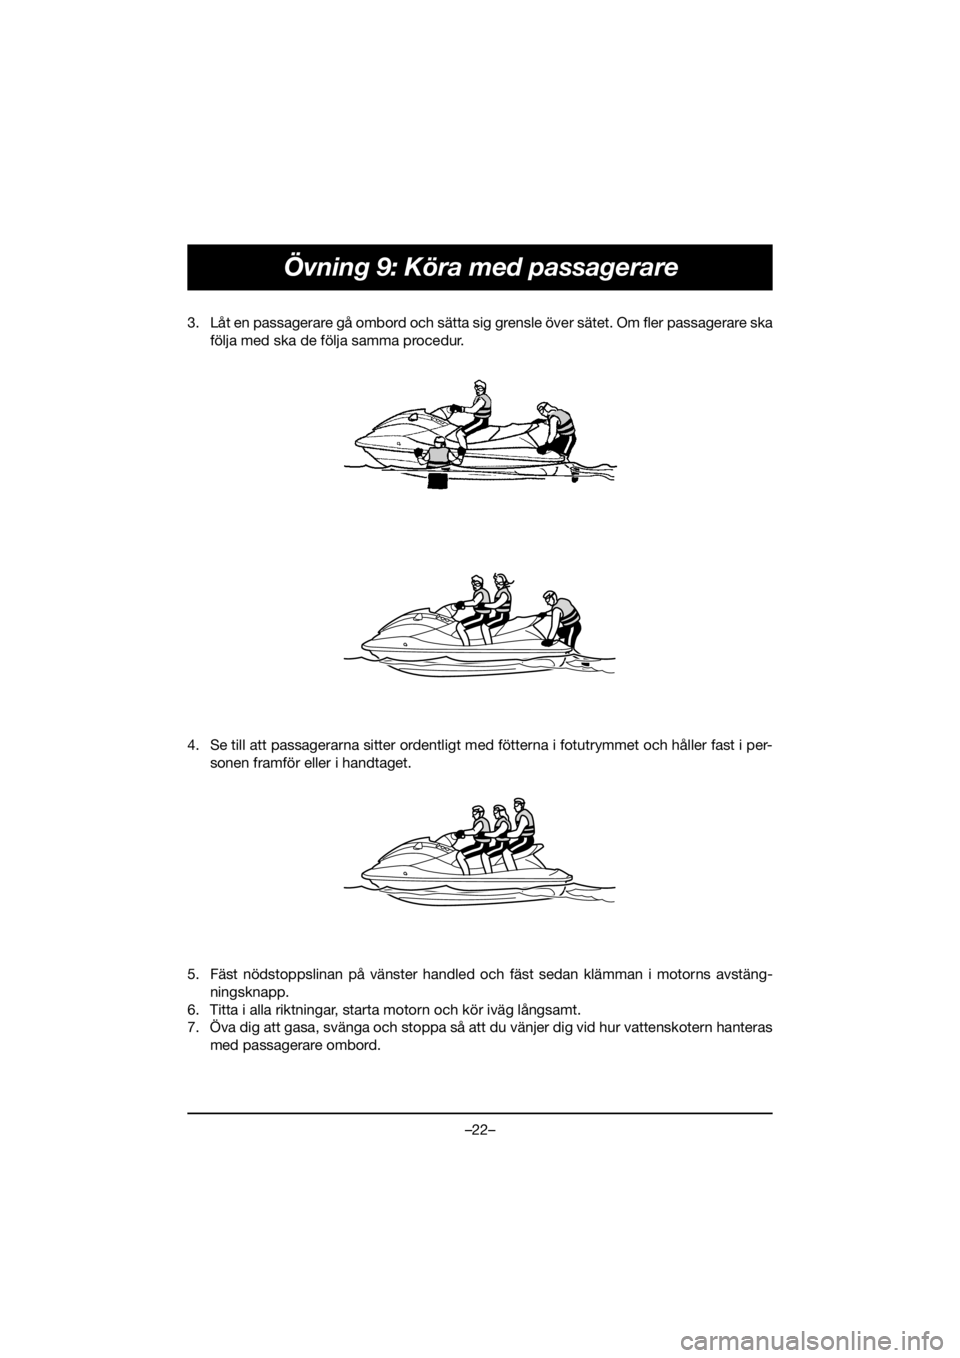 YAMAHA EXR 2020  Notices Demploi (in French) –22–
Övning 9: Köra med passagerare
3. Låt en passagerare gå ombord och sätta sig grensle över sätet. Om fler passagerare ska
följa med ska de följa samma procedur. 
4. Se till att passag